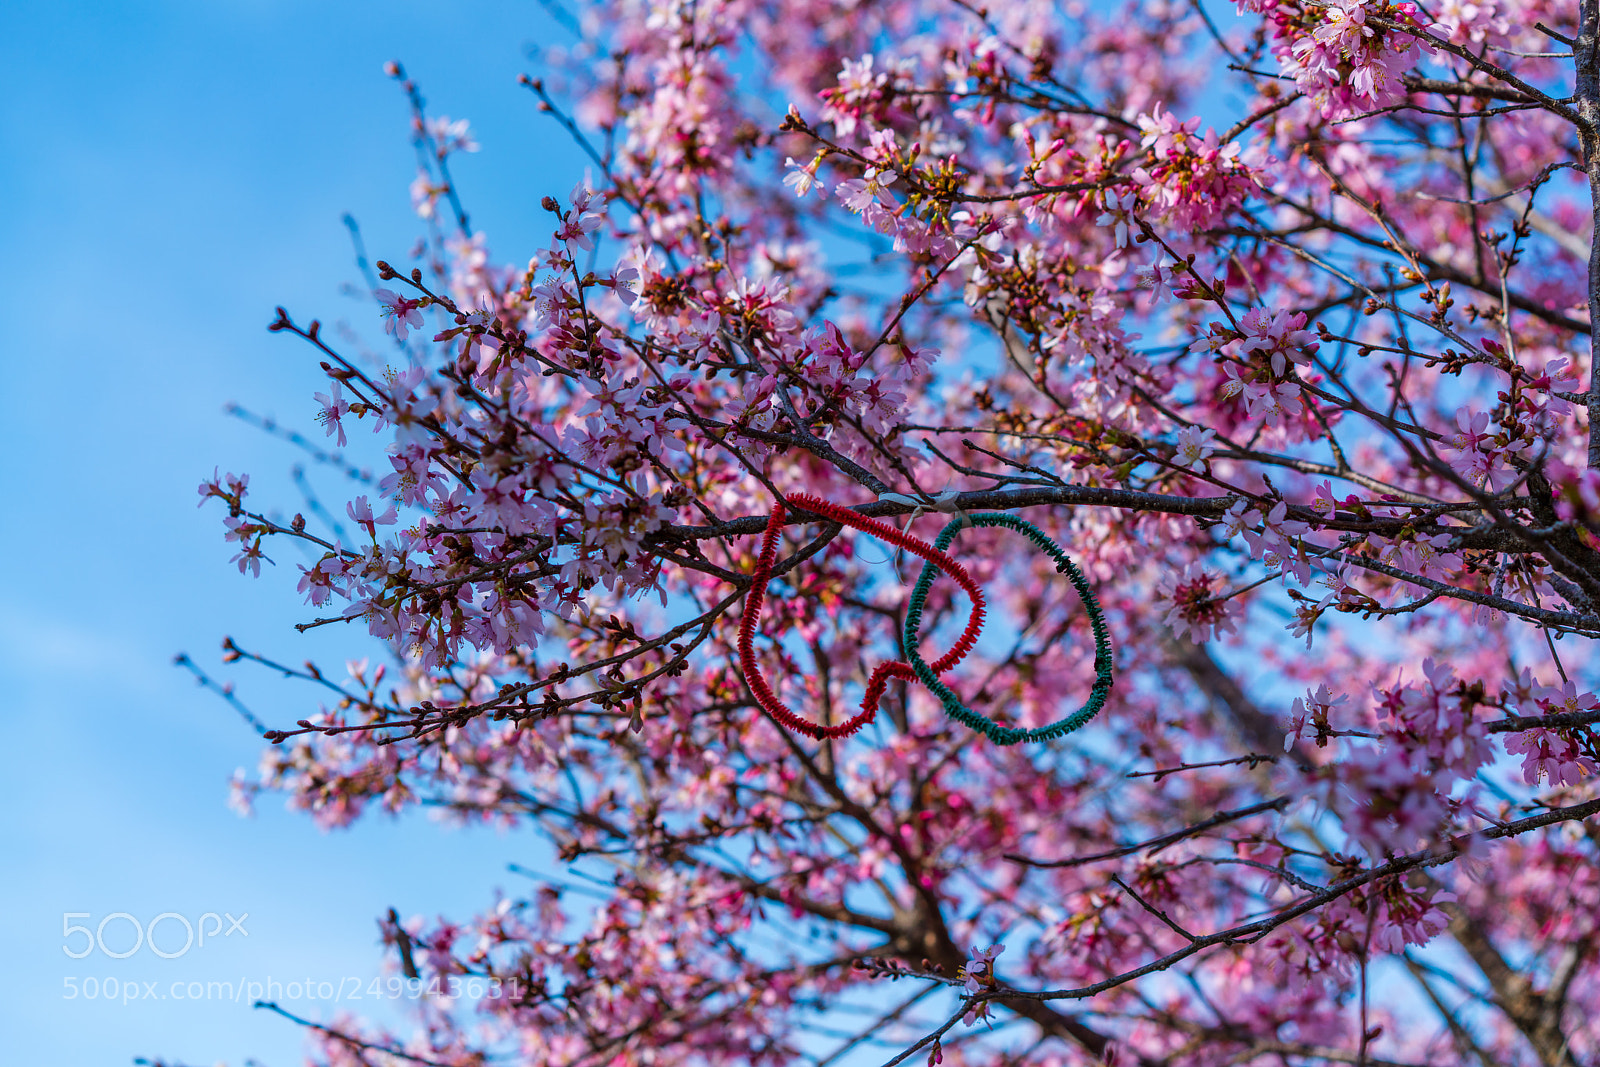 Sony a7R II sample photo. Sakura--cherry blossom photography